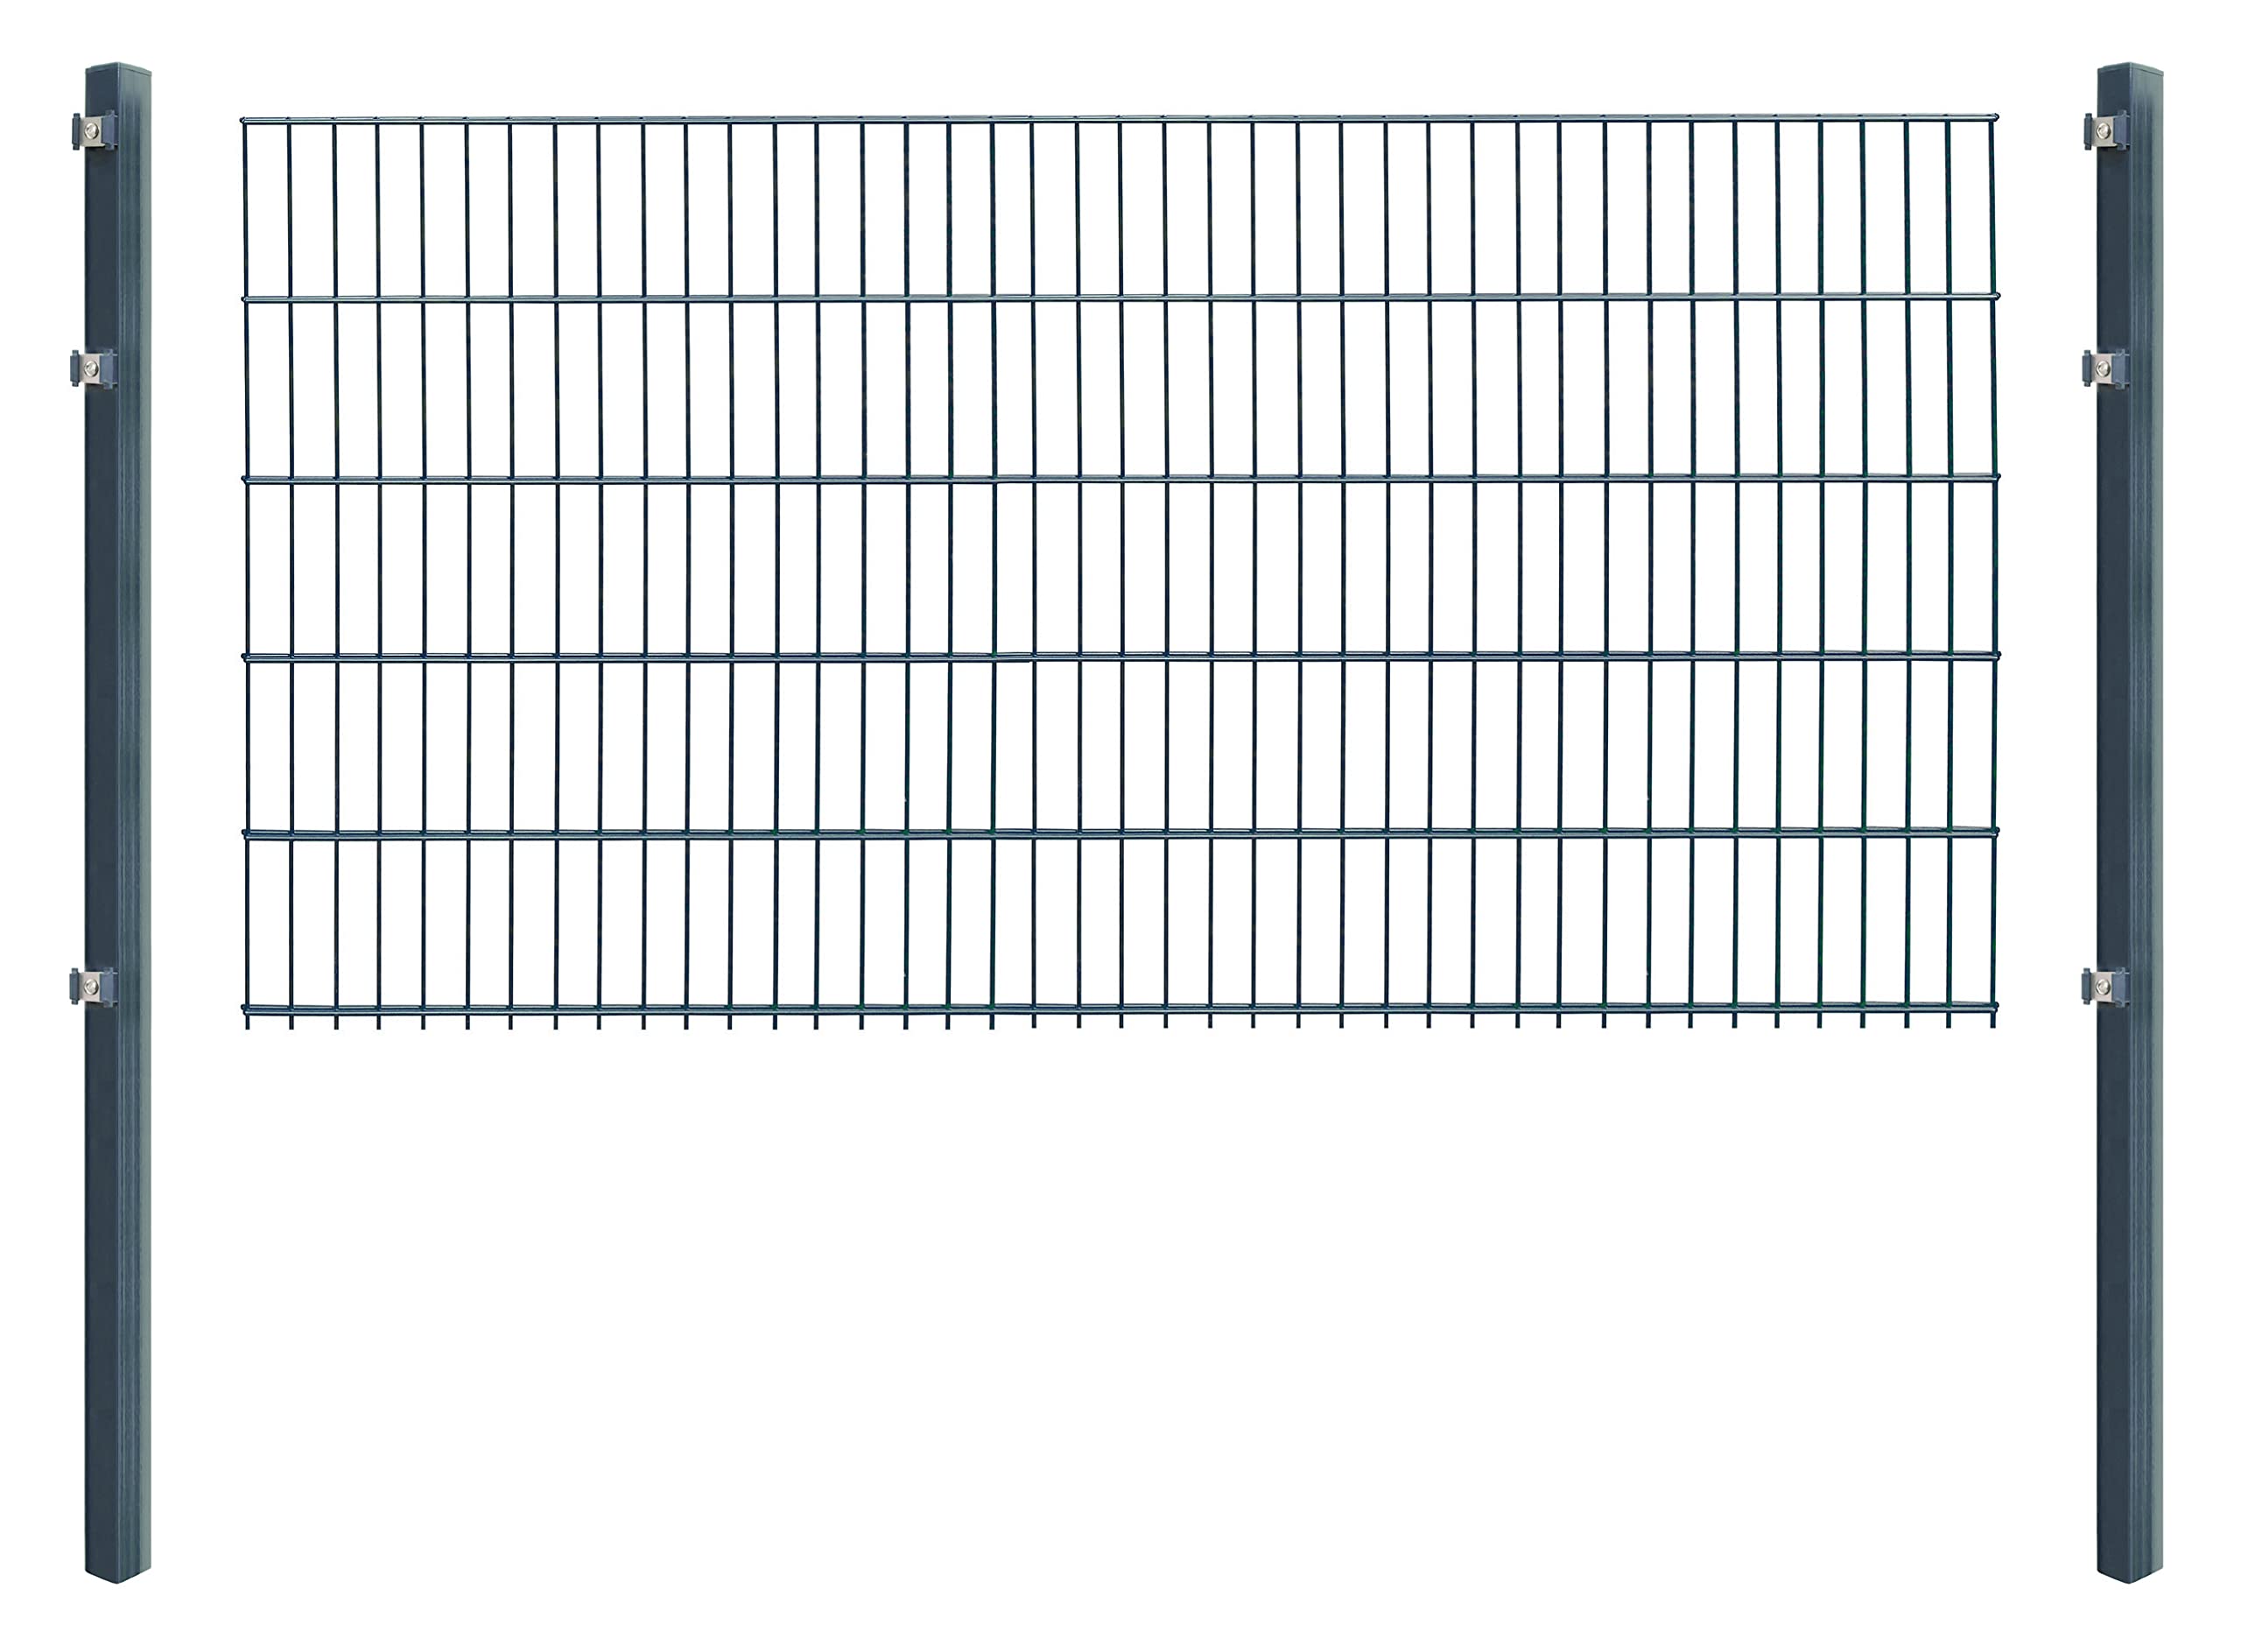 Doppelstabmattenzaun - Komplettset inkl. Pfosten (60x40mm) und Montagematerial - Verschiedene Längen und Höhen – Grün oder Anthrazit (L 4 m - H 103 cm, anthrazit)